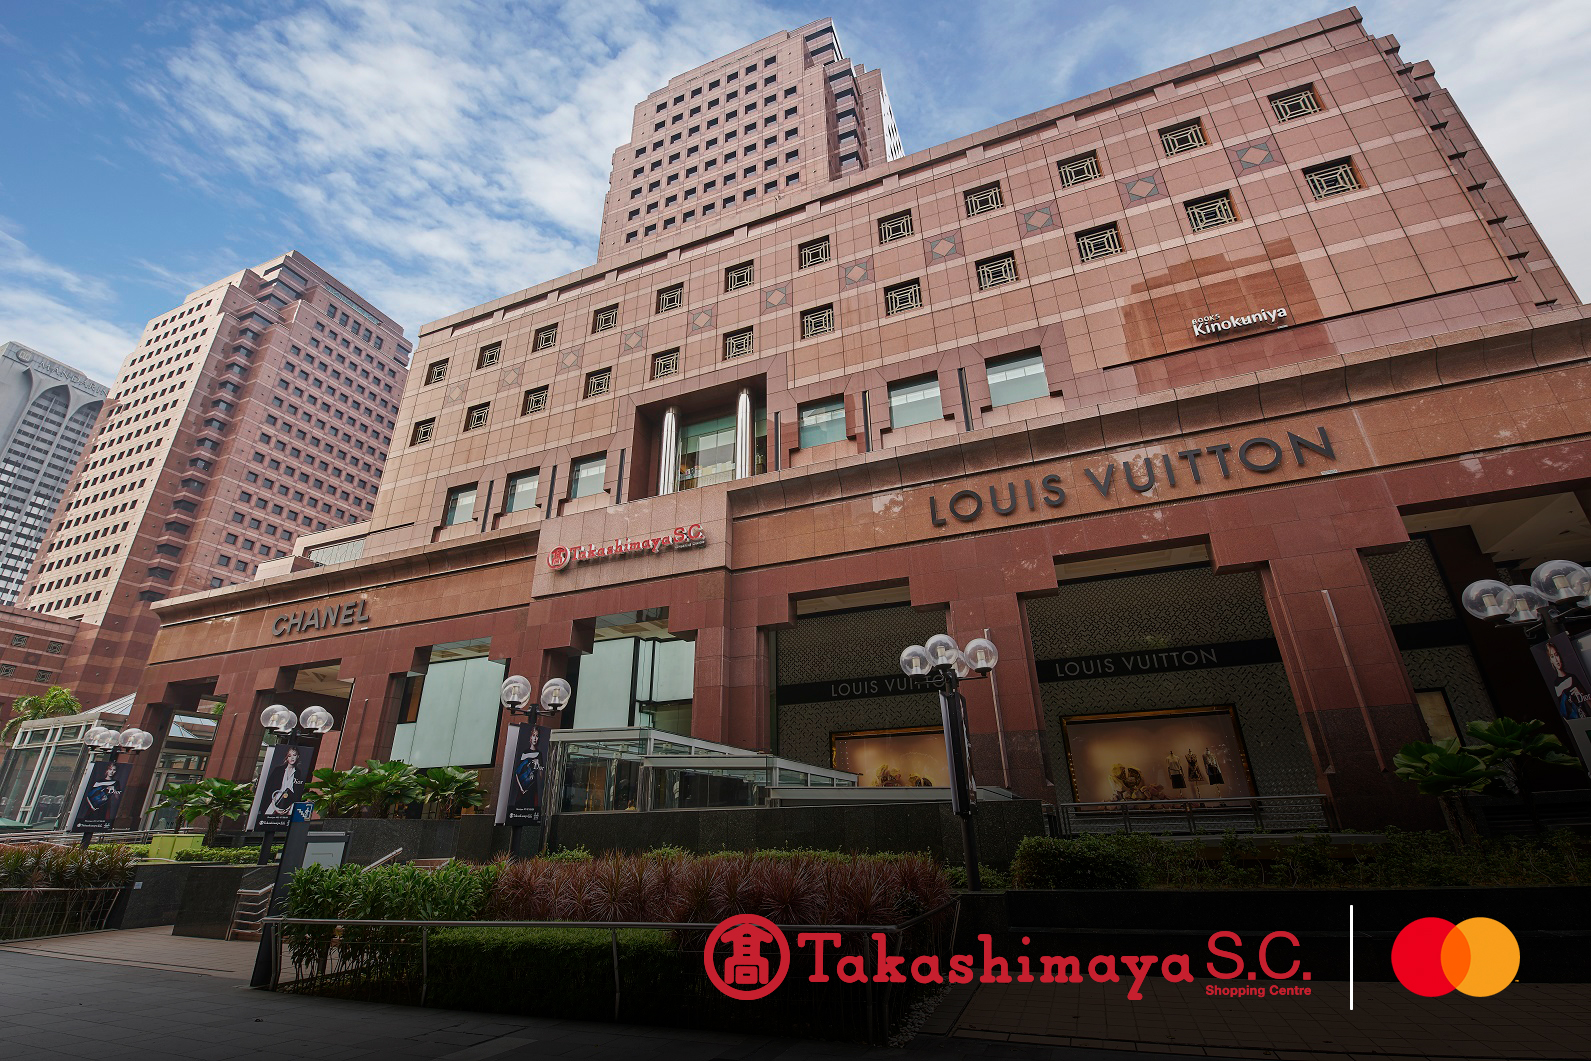 Takashimaya (Chanel shop) - Picture of Takashimaya Singapore